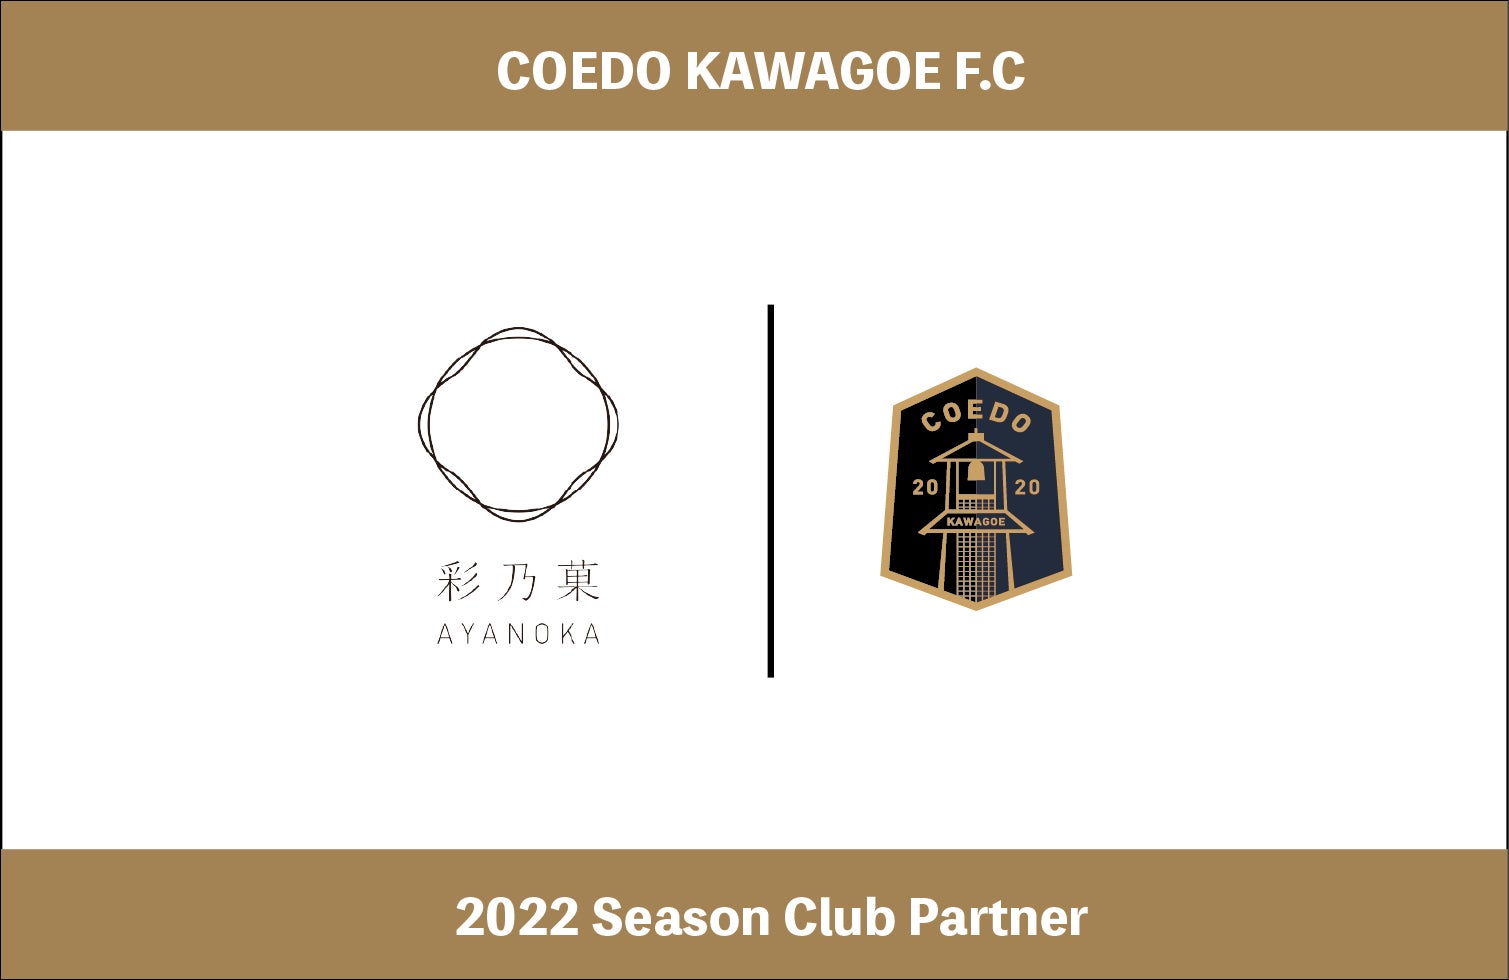 埼玉県川越市からJリーグを目指す「COEDO KAWAGOE F.C」、川越で和菓子販売を行う「彩乃菓」を運営する株式会社小川屋と2022シーズンのクラブパートナー契約を締結